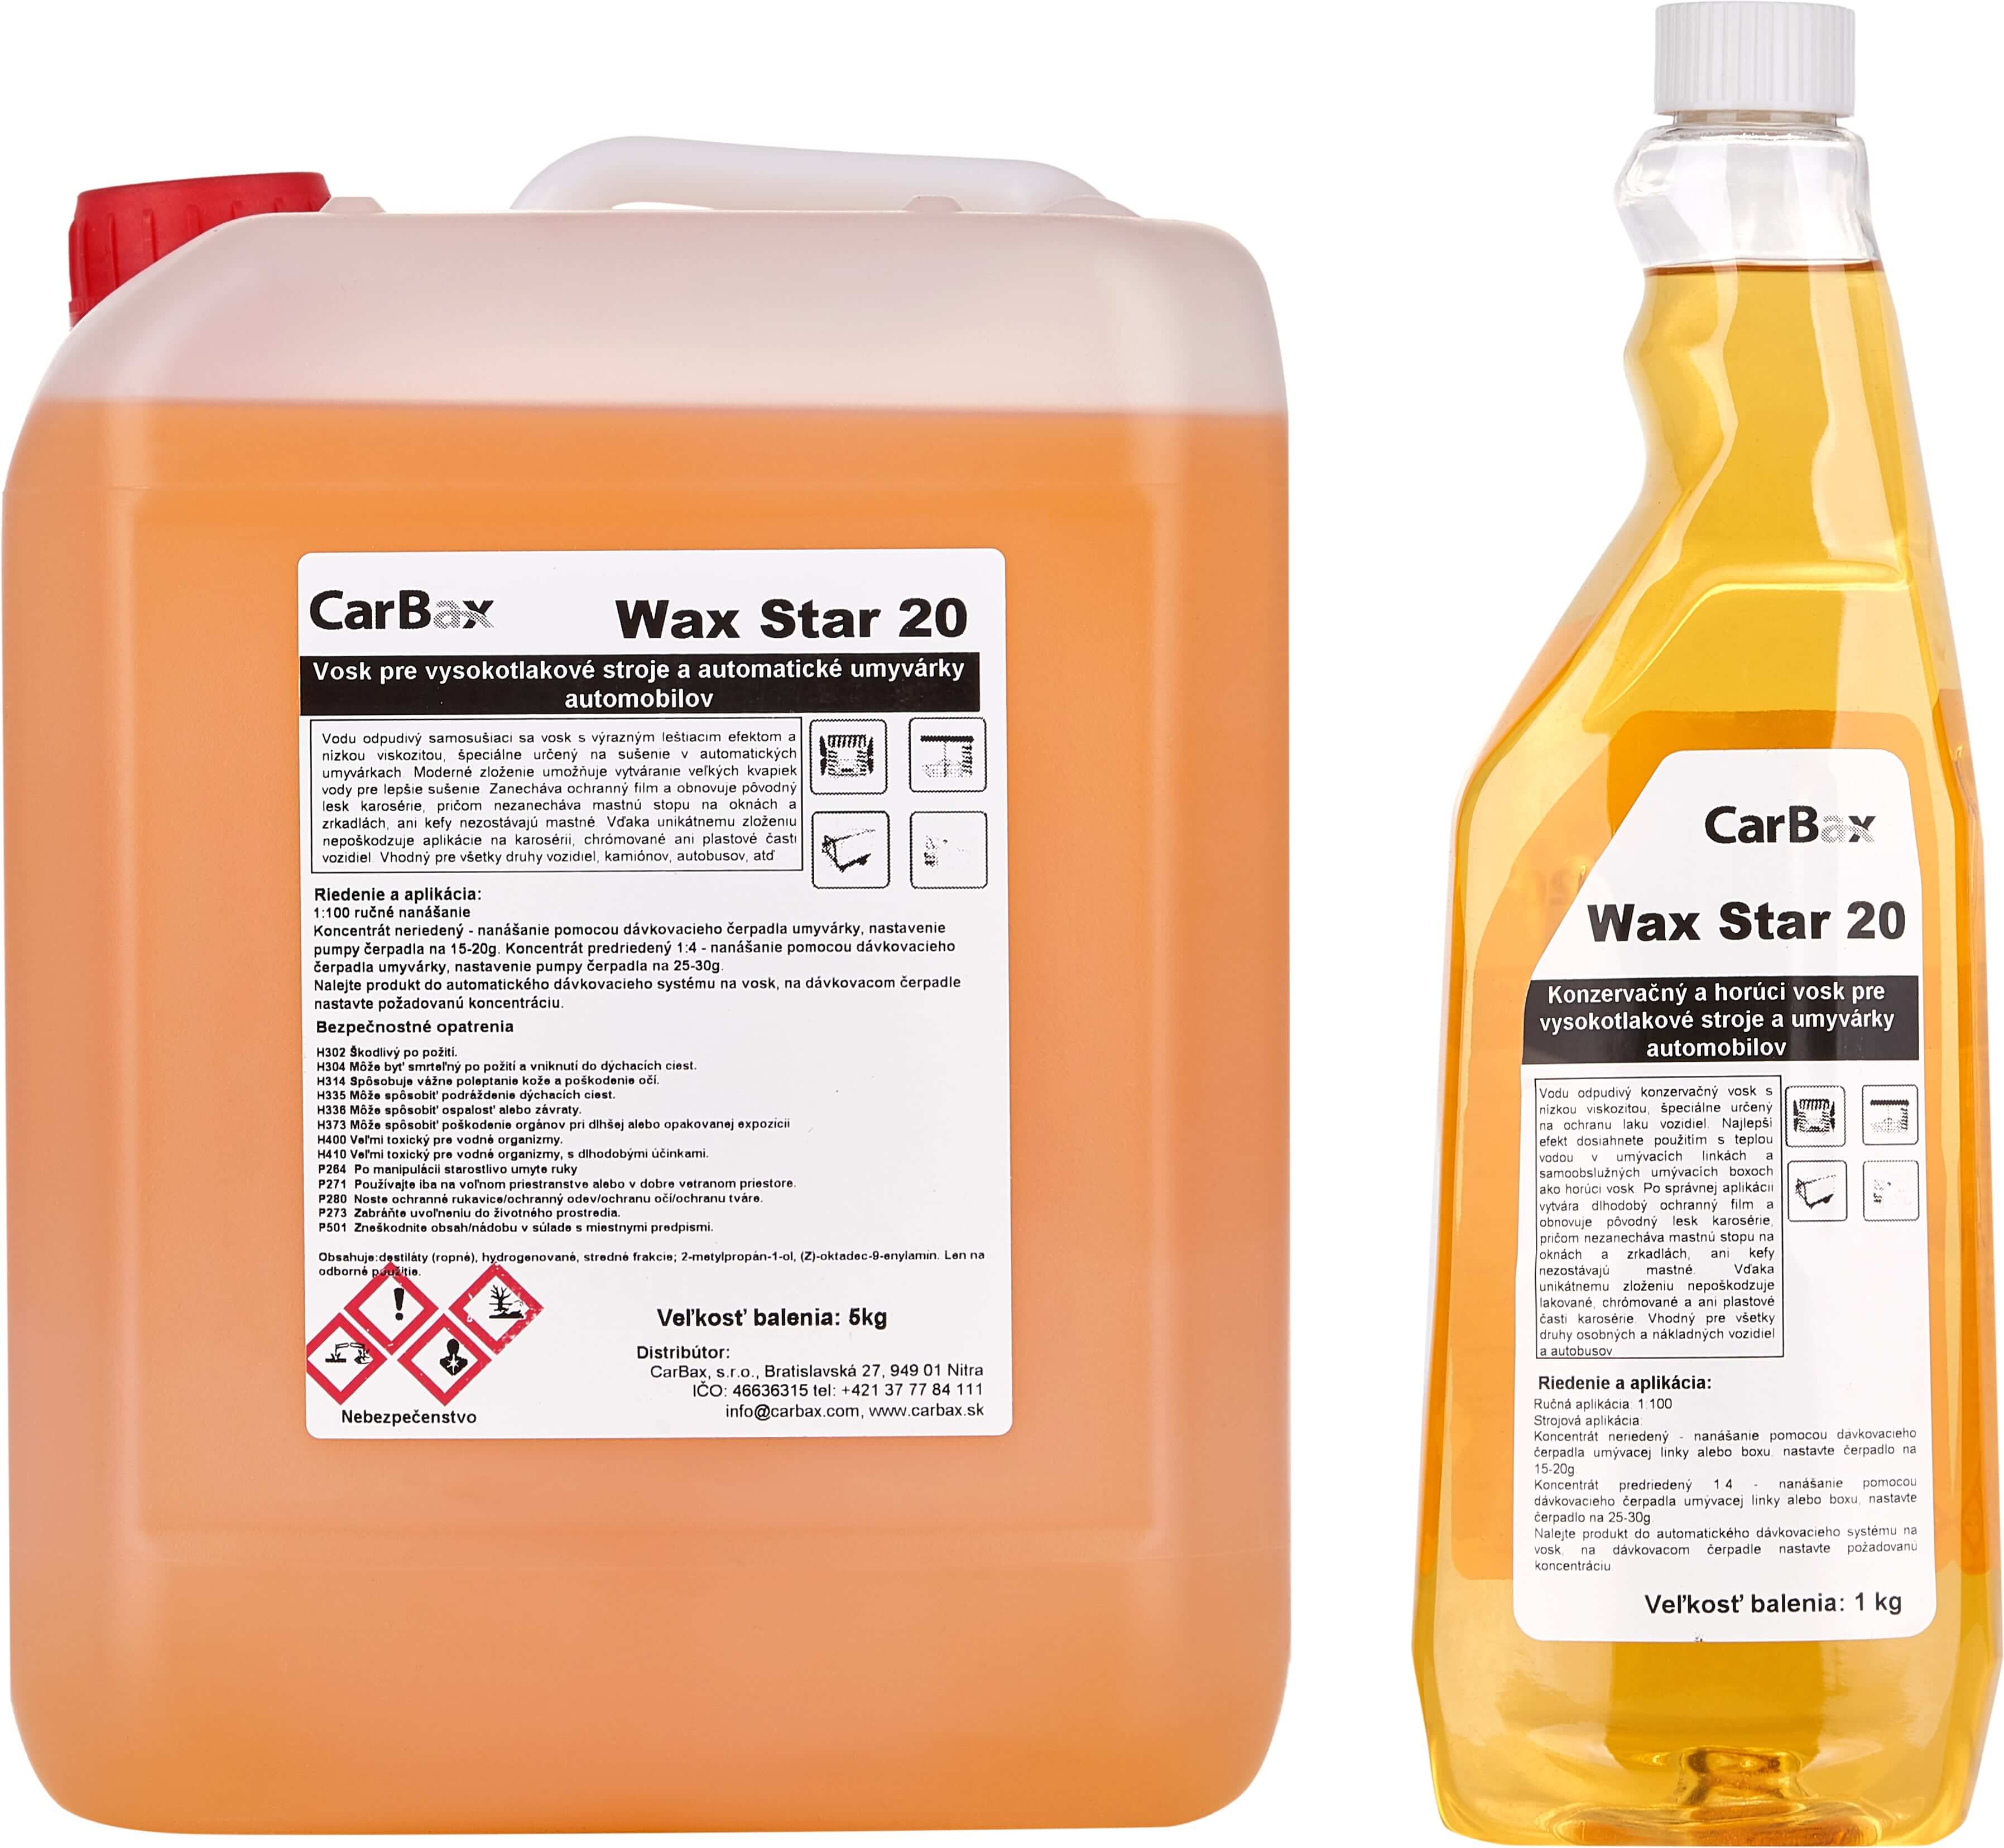 Wax Star 20 - Super wax